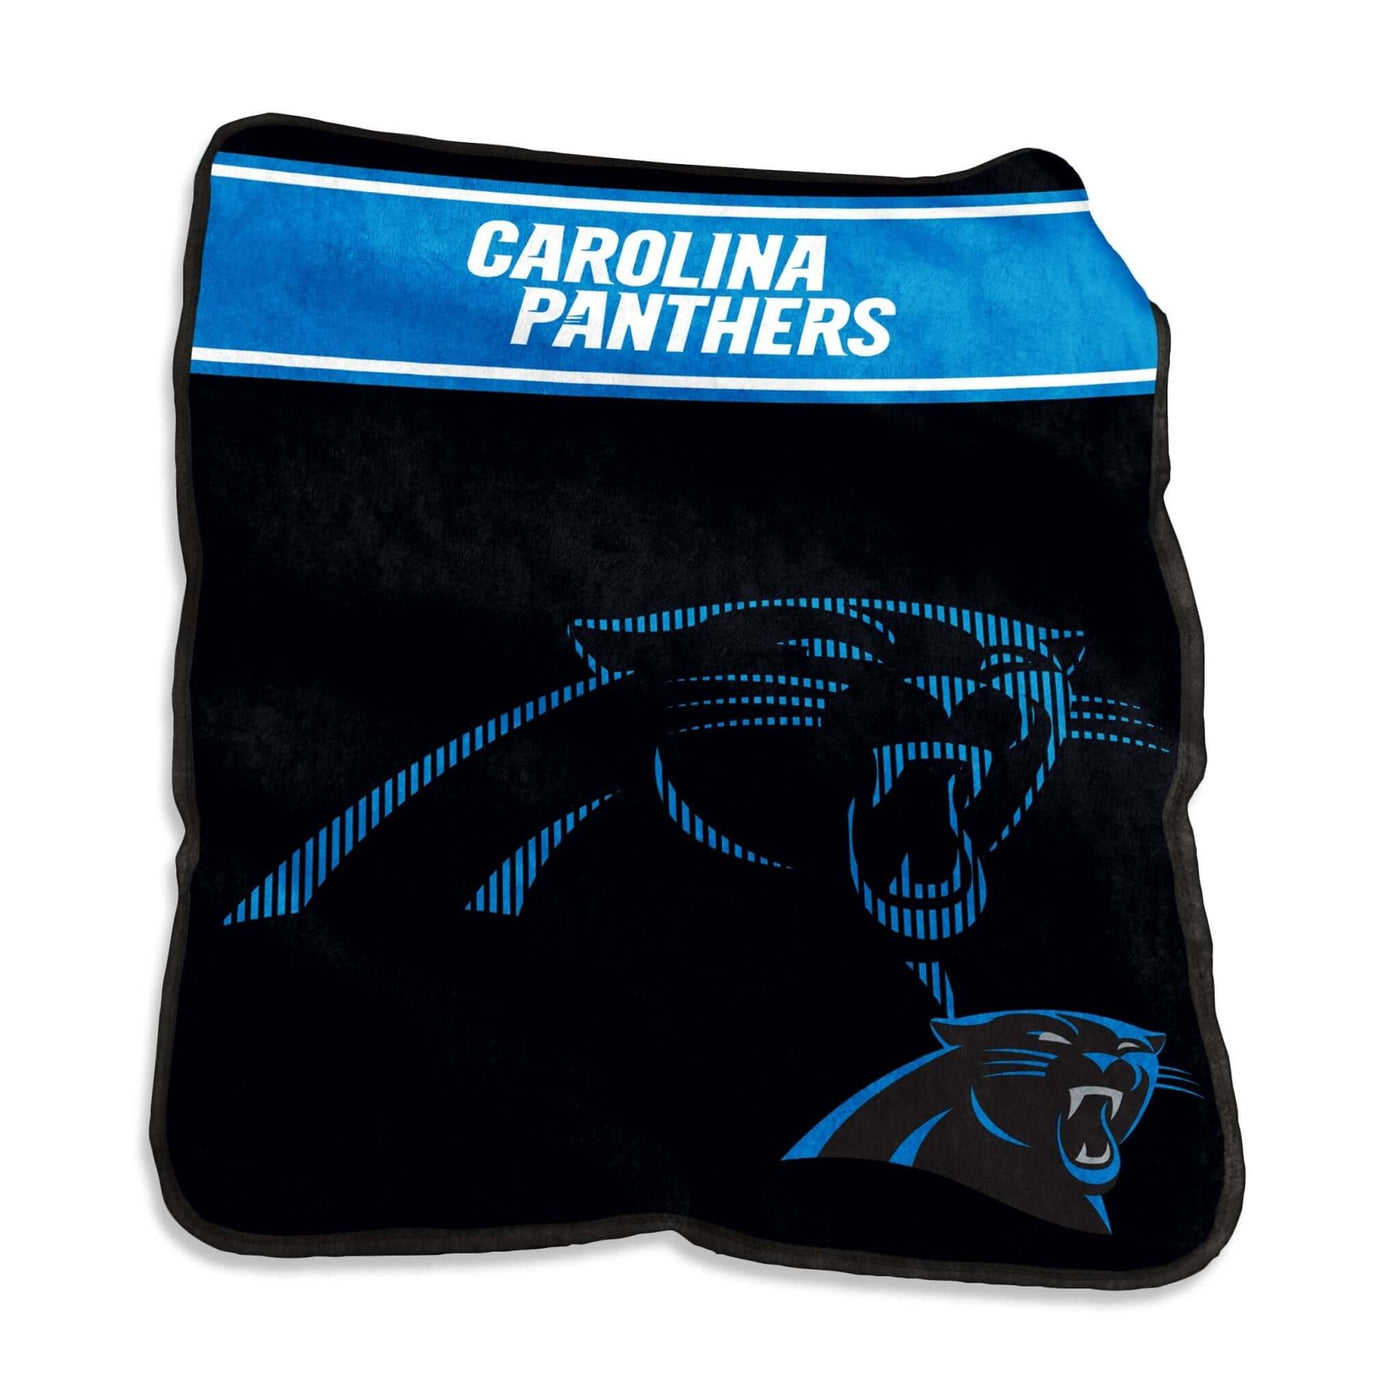 Carolina Panthers 60x80 Raschel Throw - Logo Brands